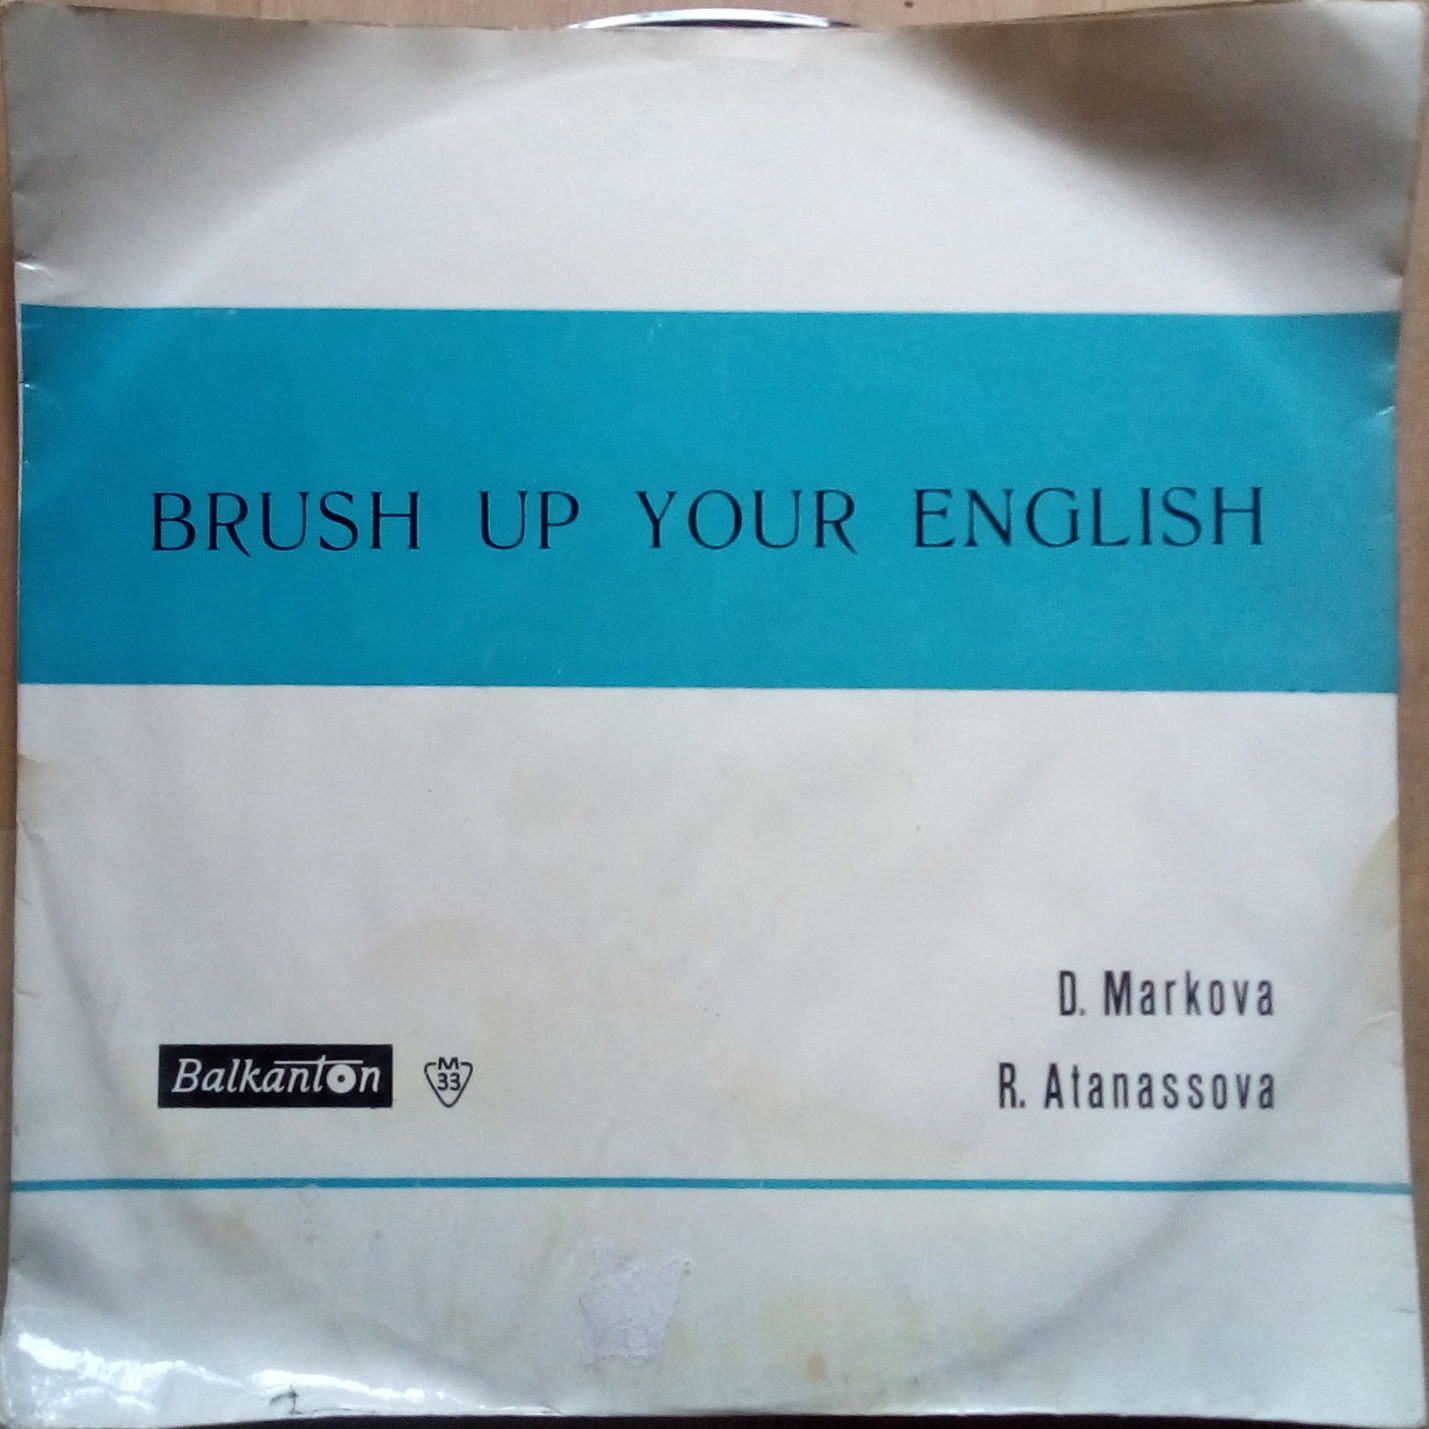 Brush Up Your English (by D. Markova and R. Atanassova)